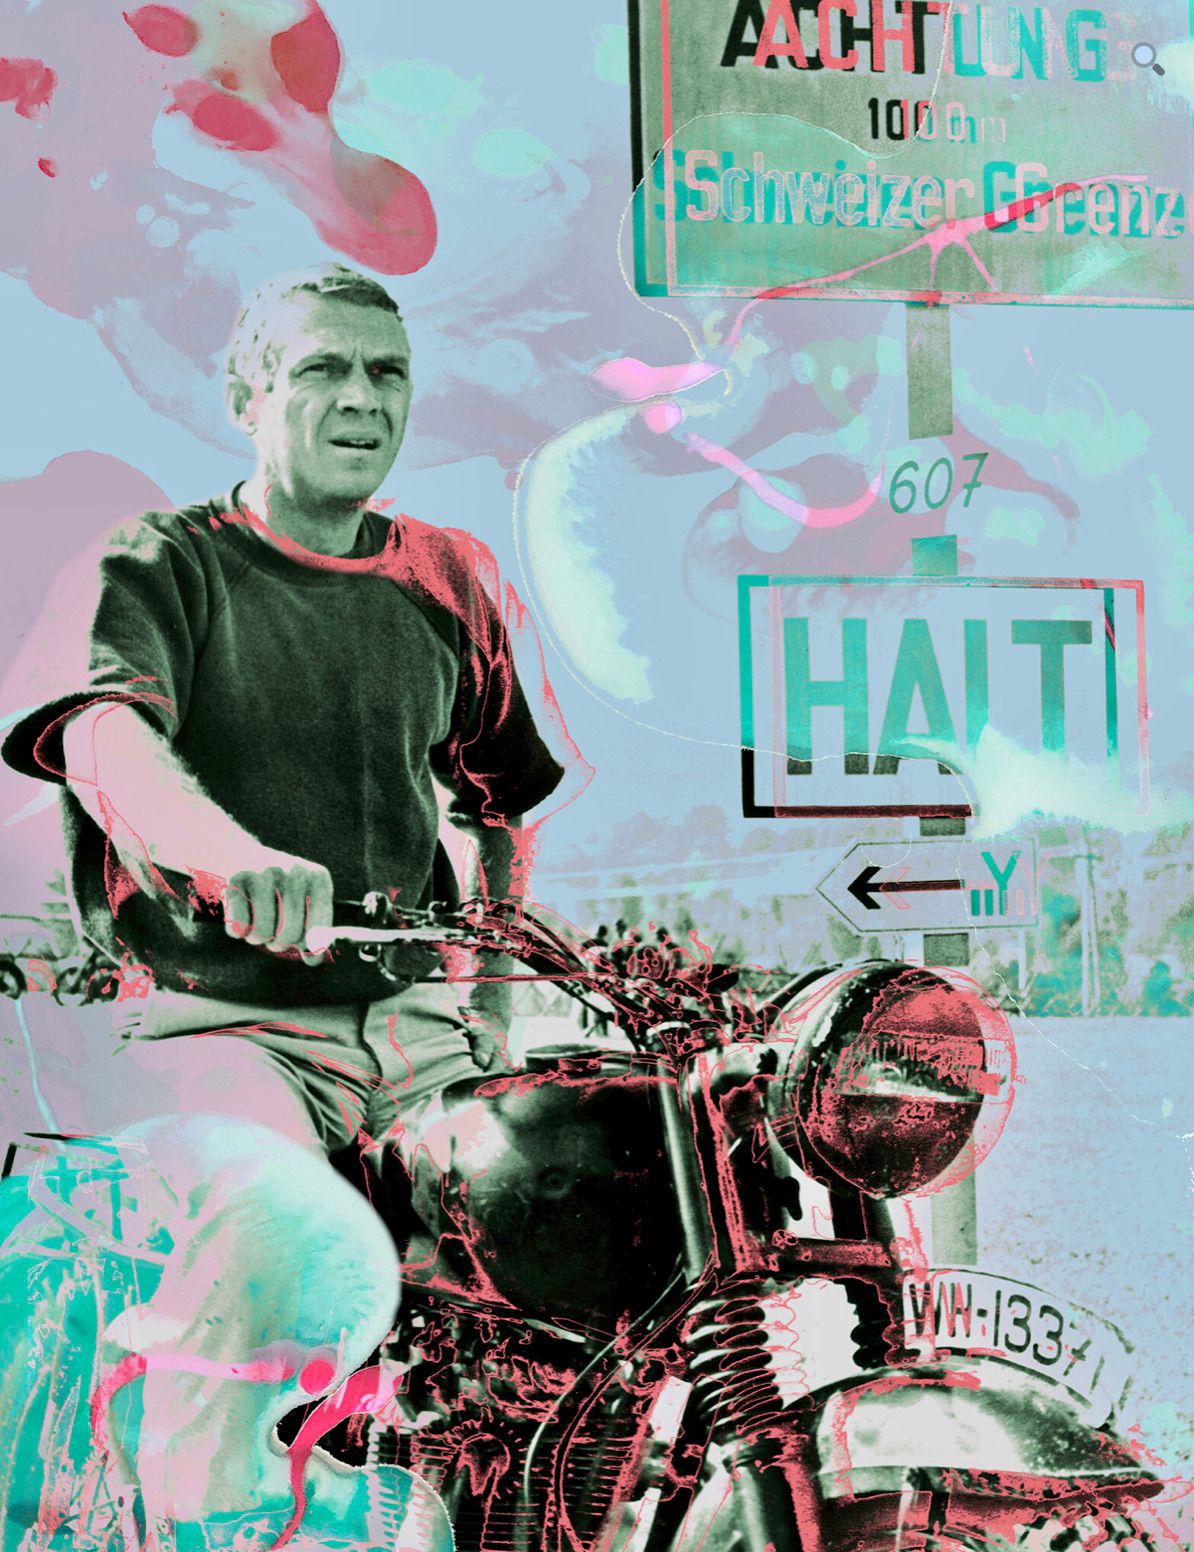 Nathali von Kretschmann的绘画构图男子在城市的摩托车上叠加颜色